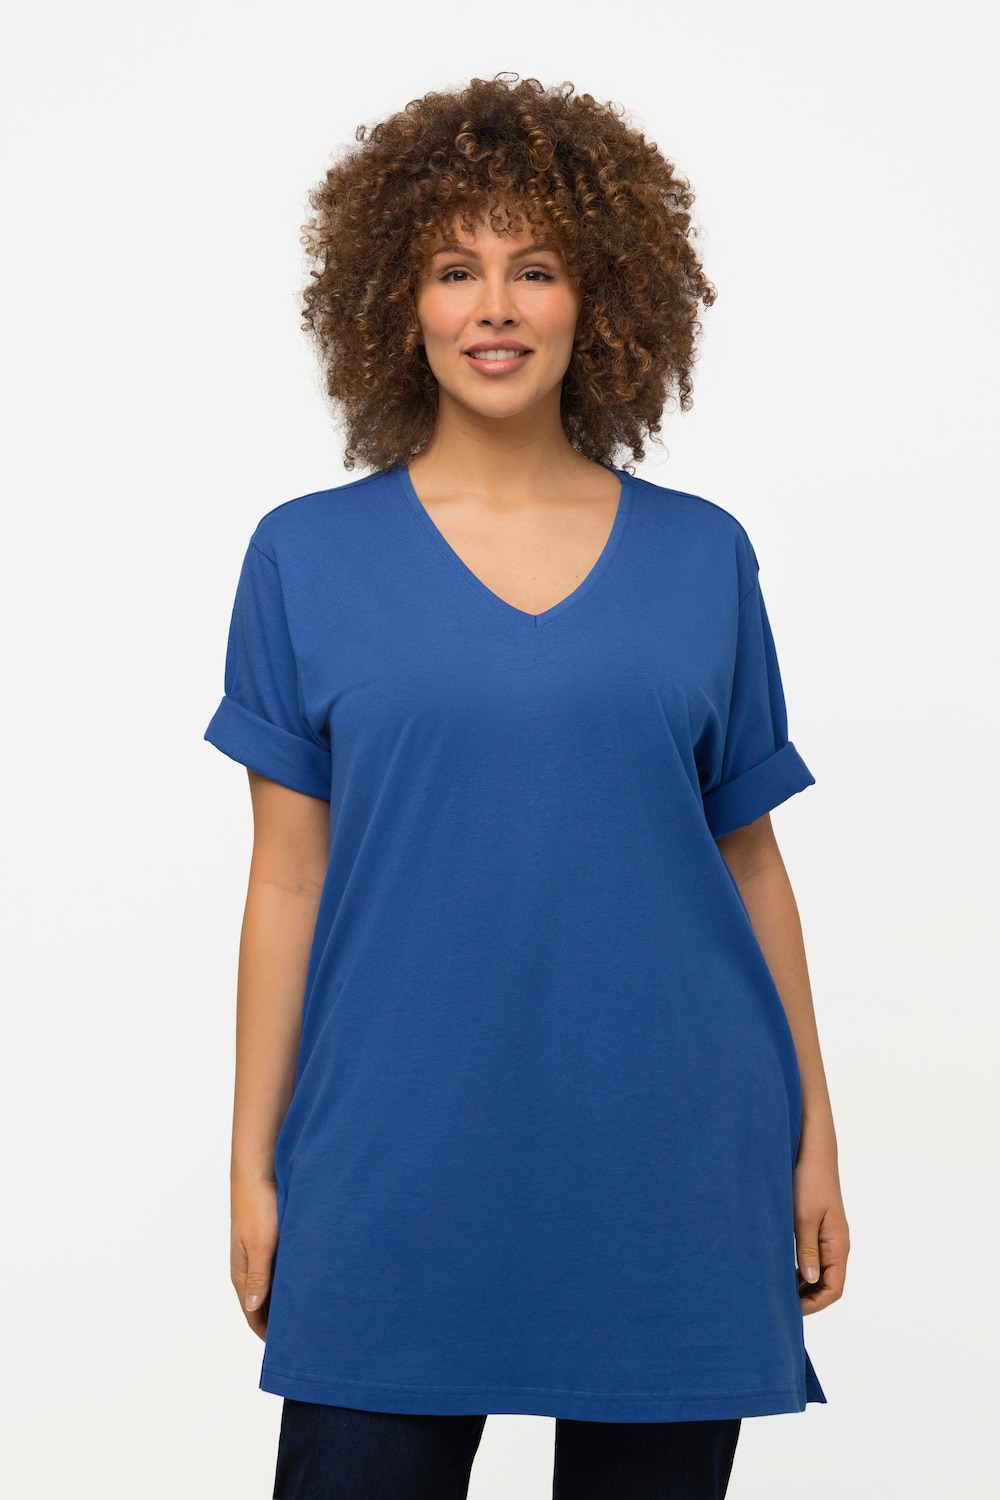 Grote Maten T-shirt, Dames, blauw, Maat: 66/68, Ulla Popken